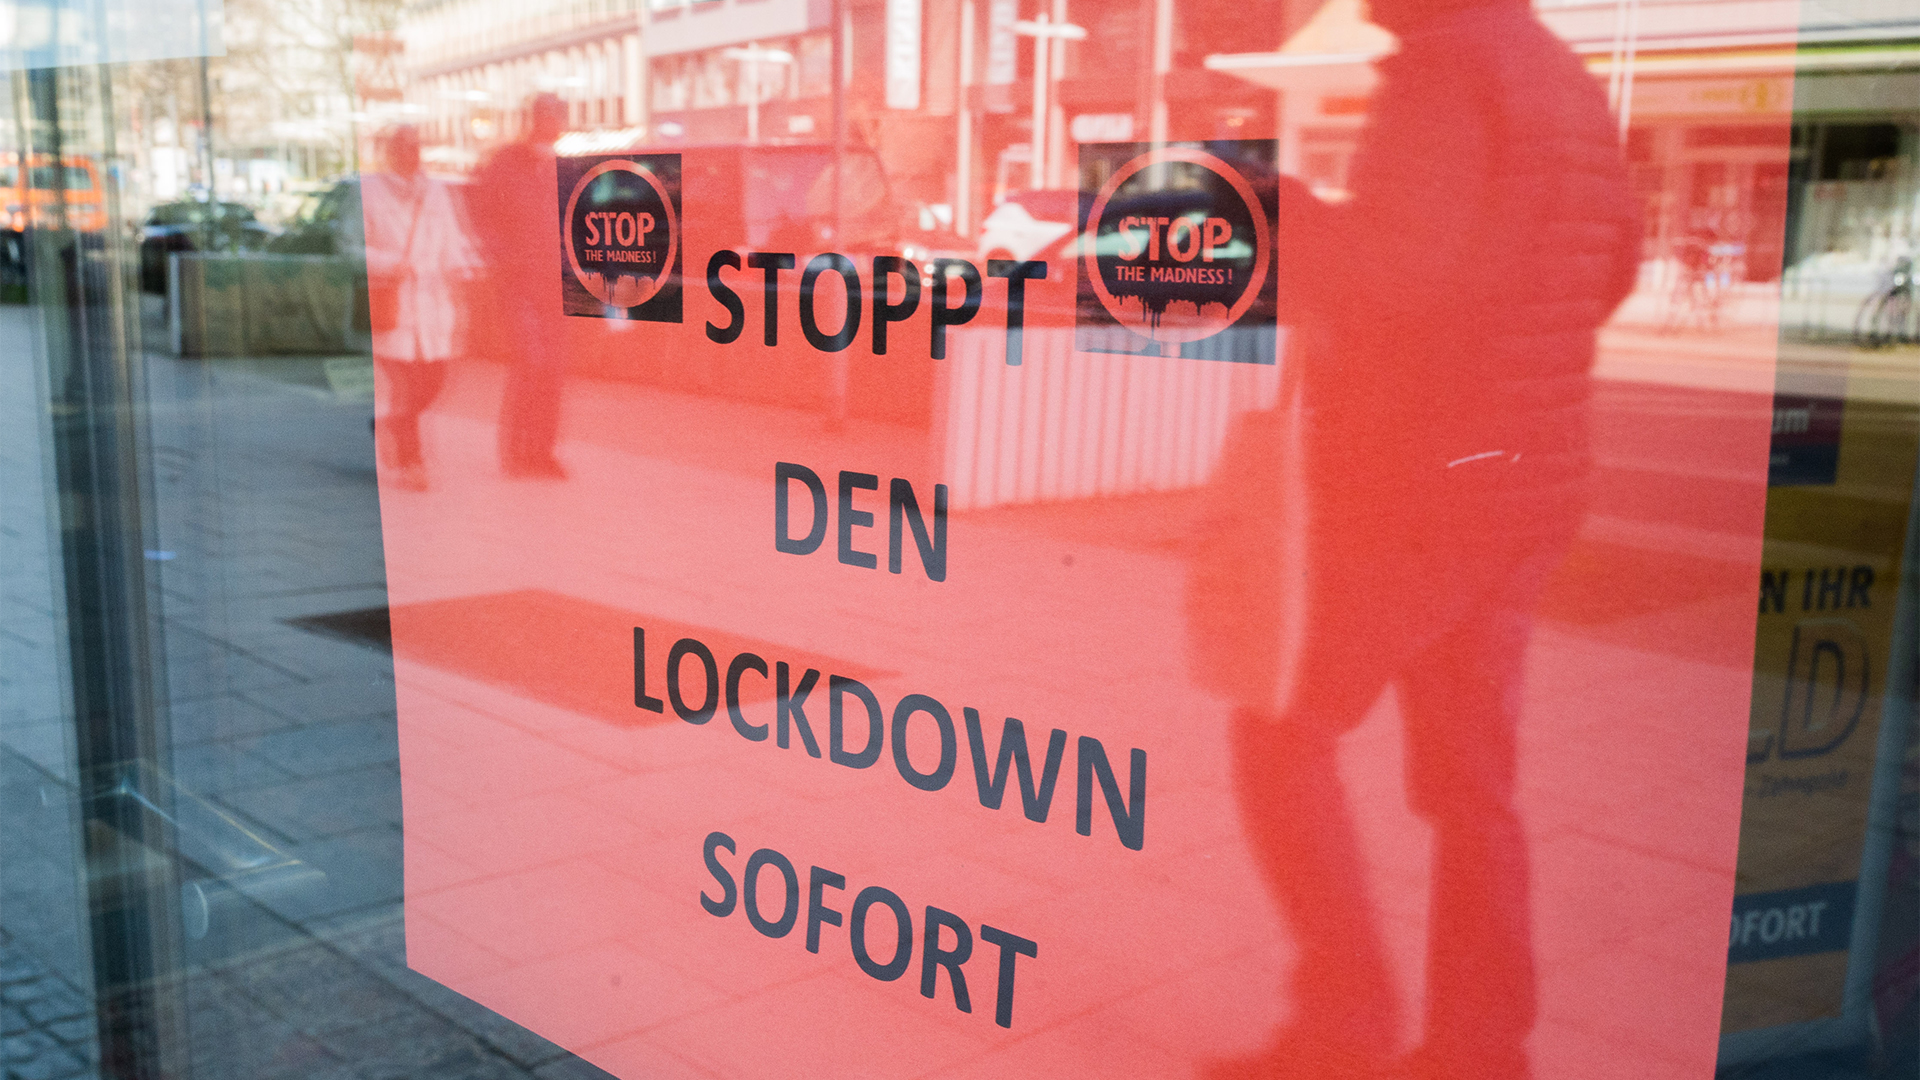 Ein Schild mit der Aufschrift "Stoppt den Lockdown sofort" hängt in der Eingangstür eines Ladengeschäftes.